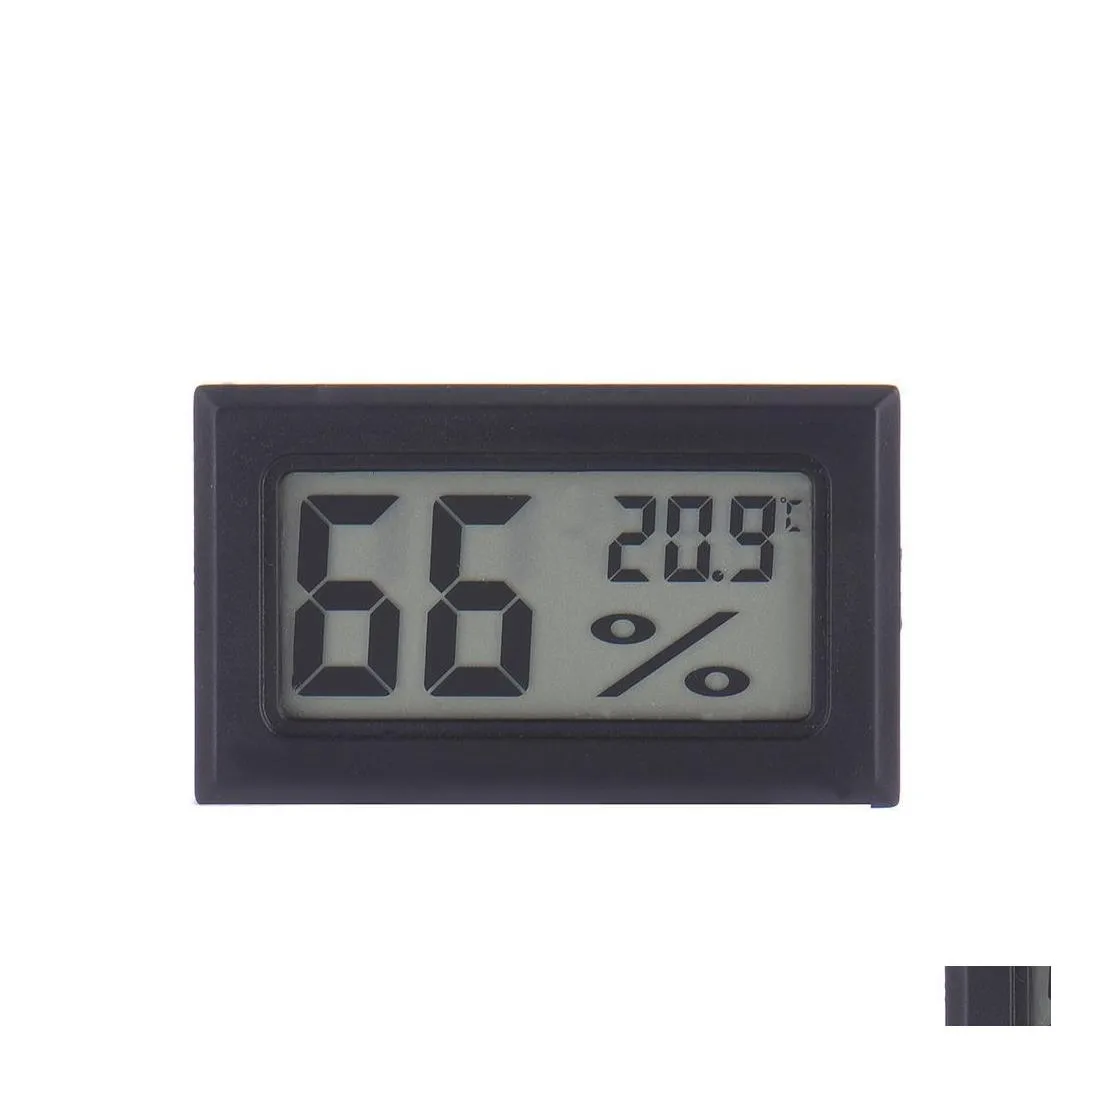 Przyrządy do pomiaru temperatury 2021 bezprzewodowy cyfrowy termometr wewnętrzny Lcd higrometr Mini miernik temperatury i wilgotności czarny biały spadek Del Dh2Tp